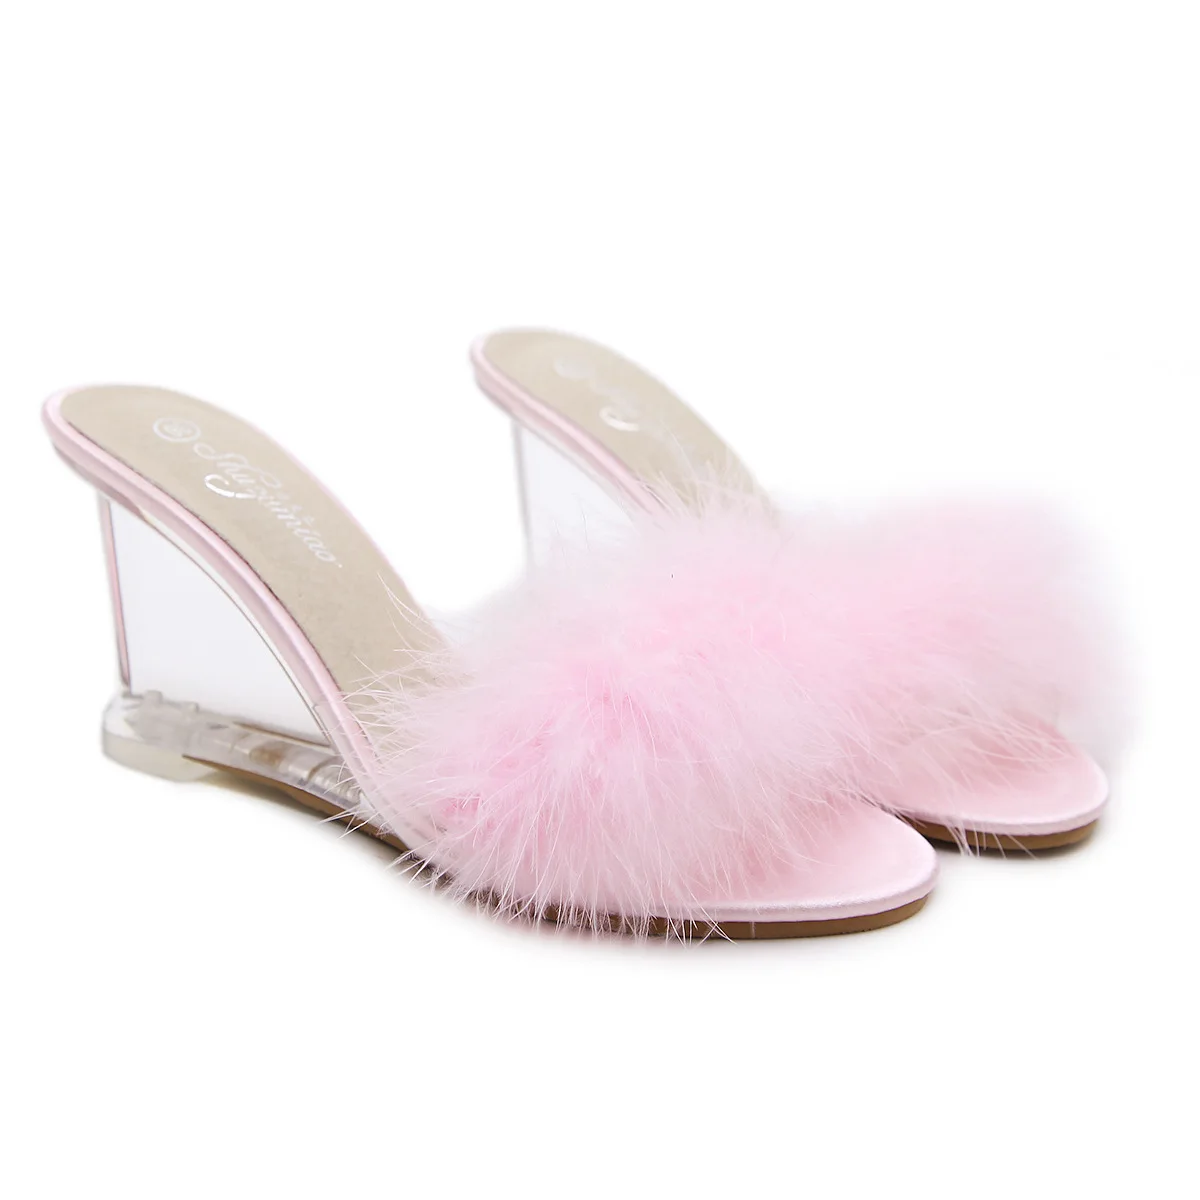 Г., новые туфли на высоком каблуке женские летние пикантные сандалии со стразами элегантные пикантные сандалии LFD-833-6